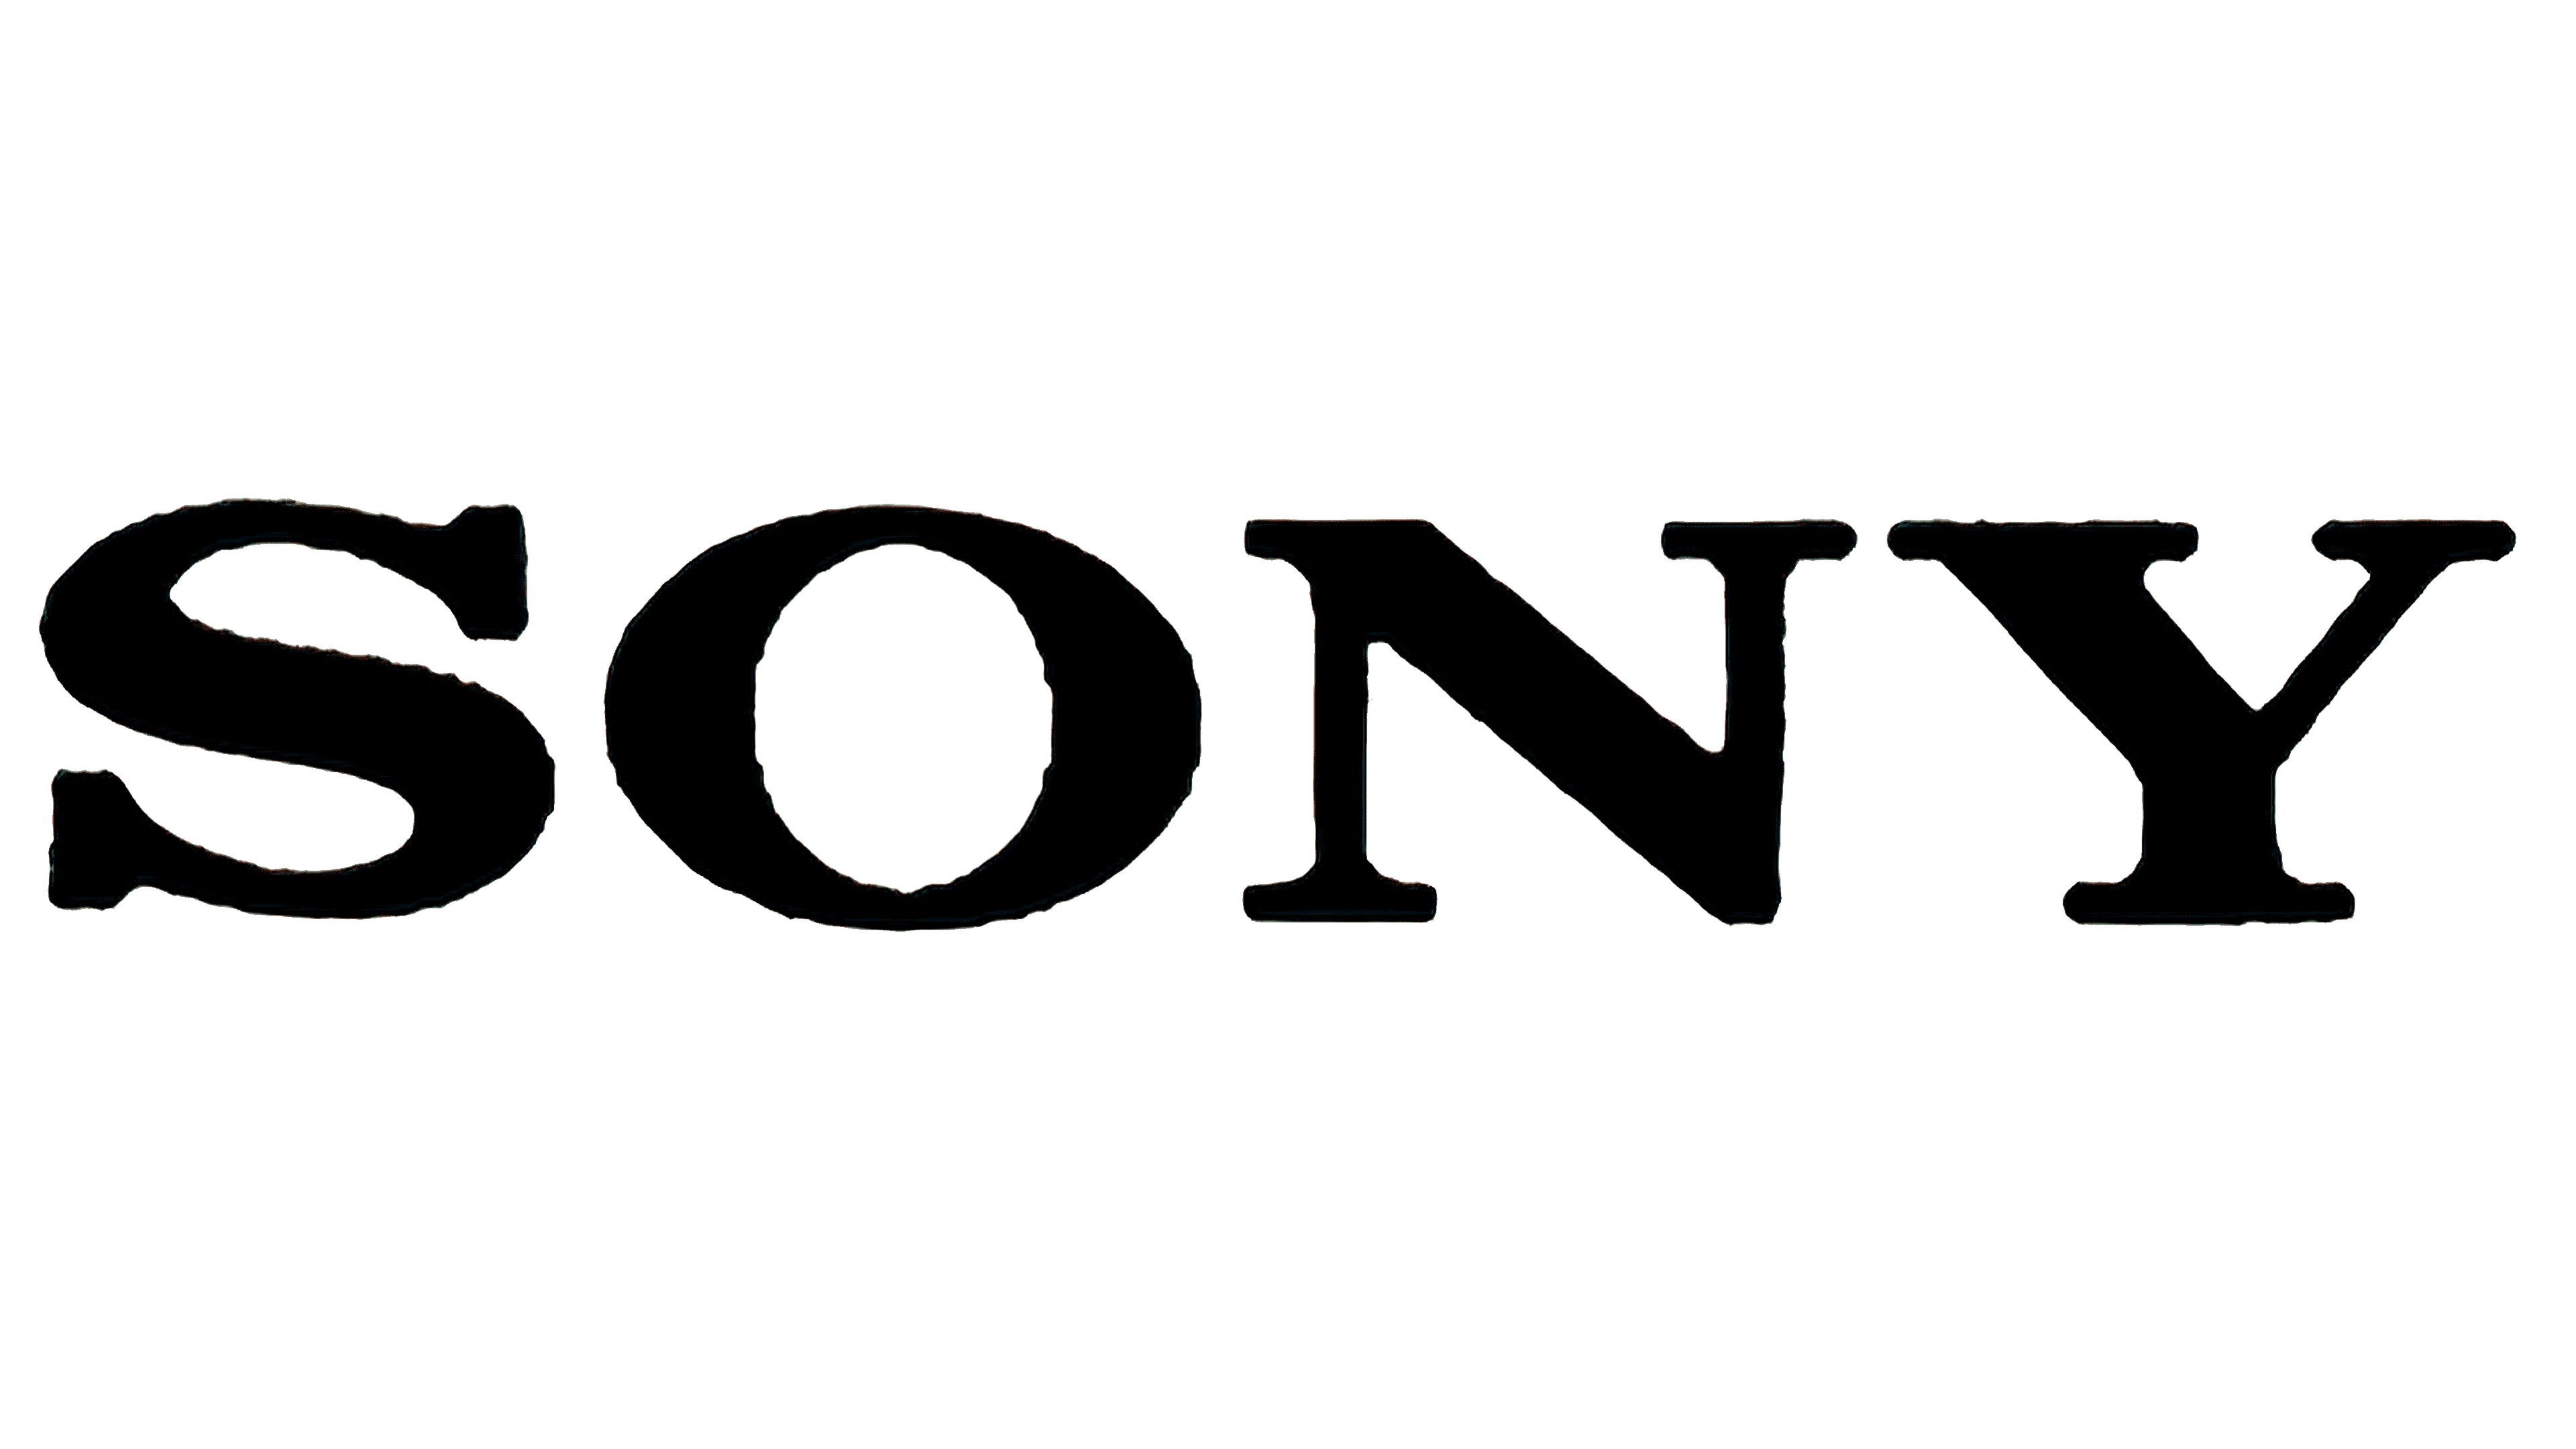 Sony Logo Png - KibrisPDR